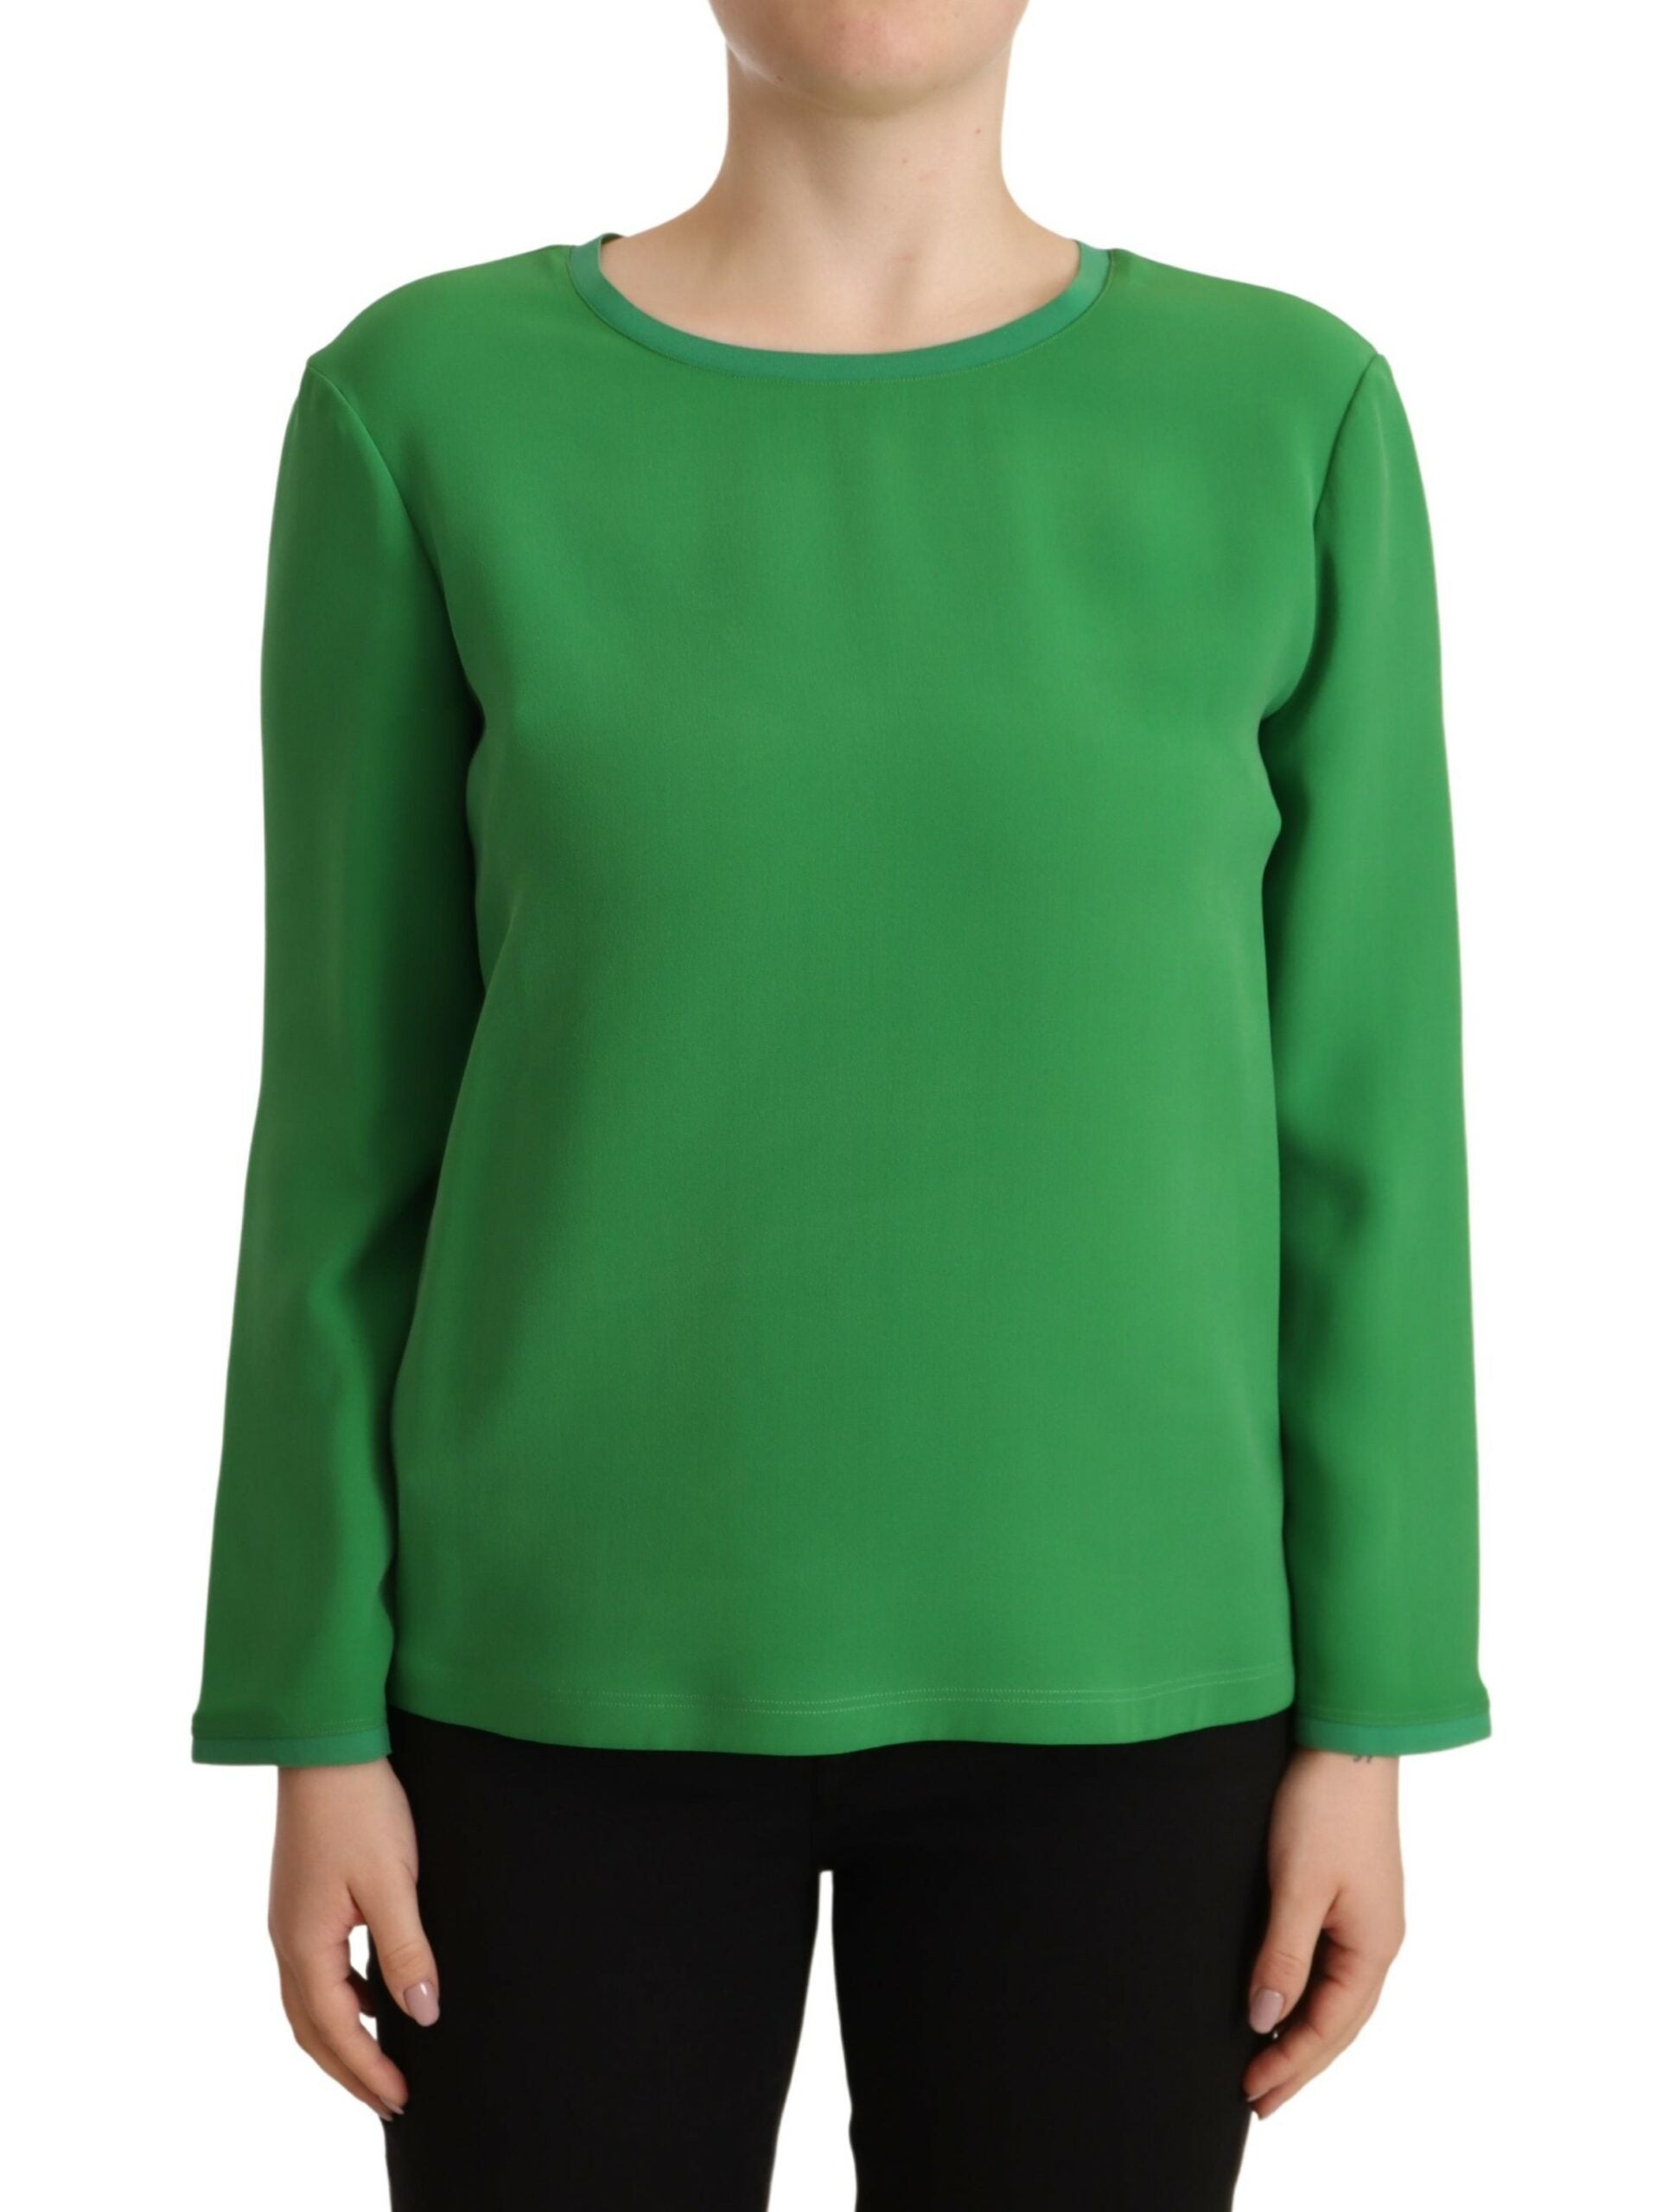 Armani Grøn Silkee Sweater